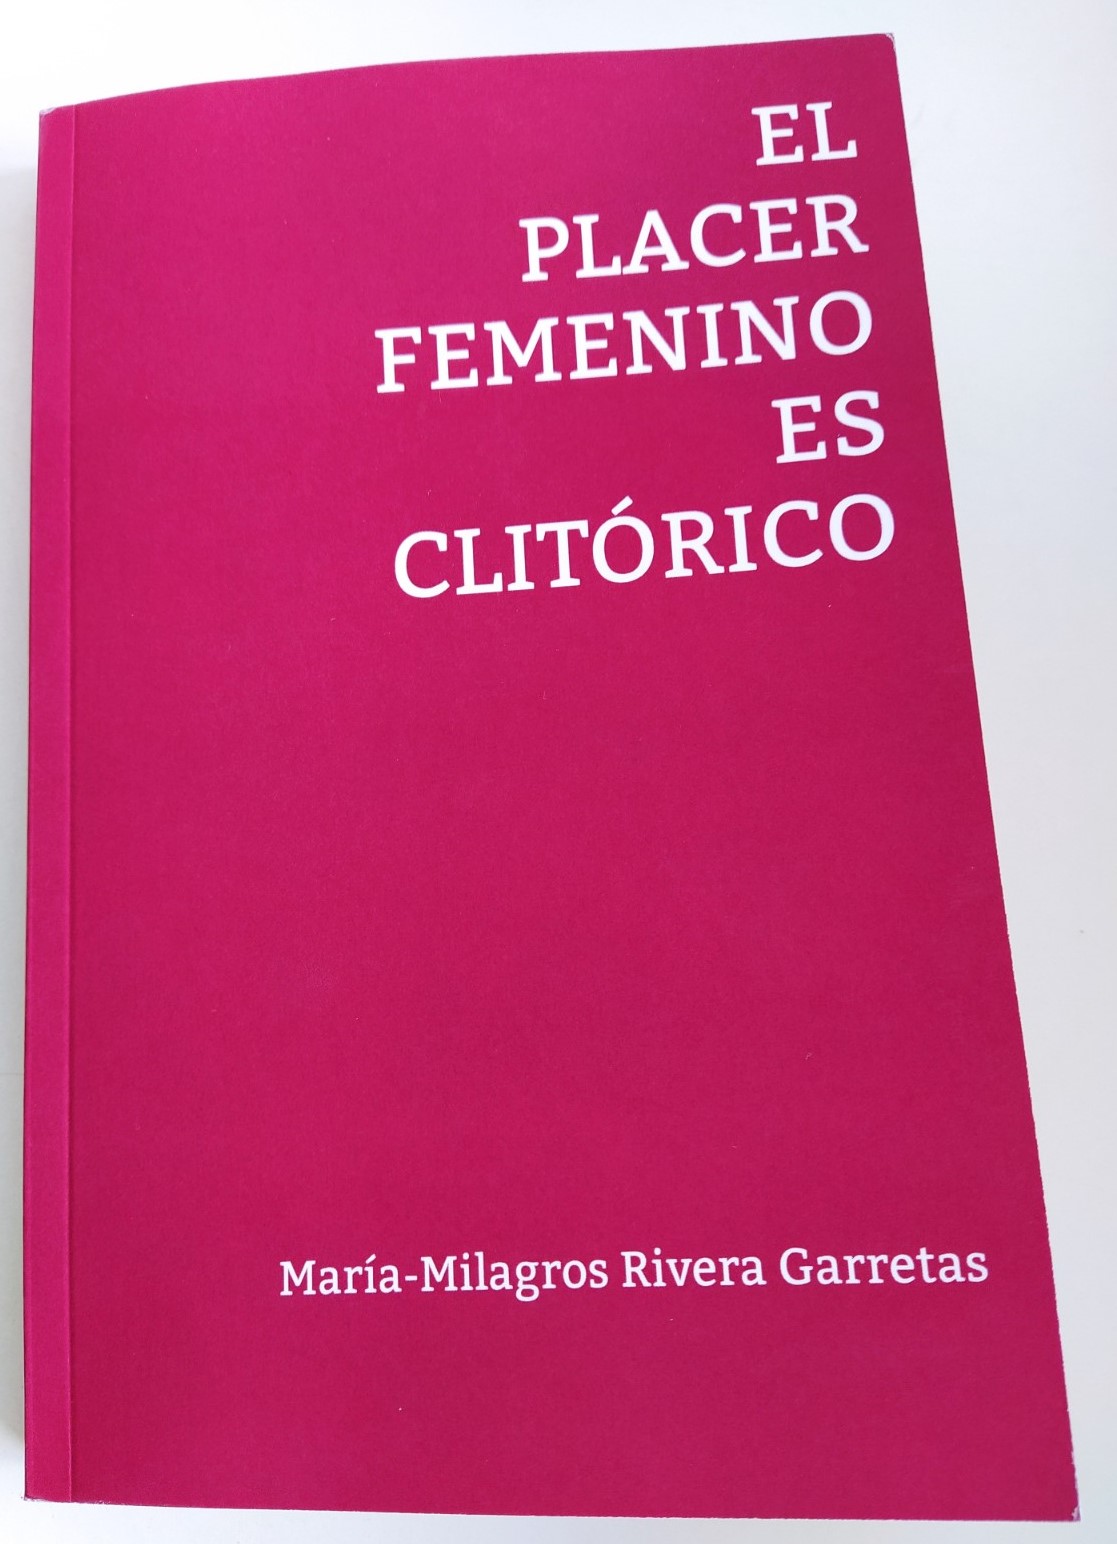 Se acaba de publicar el libro de María-Milagros Rivera Garretas